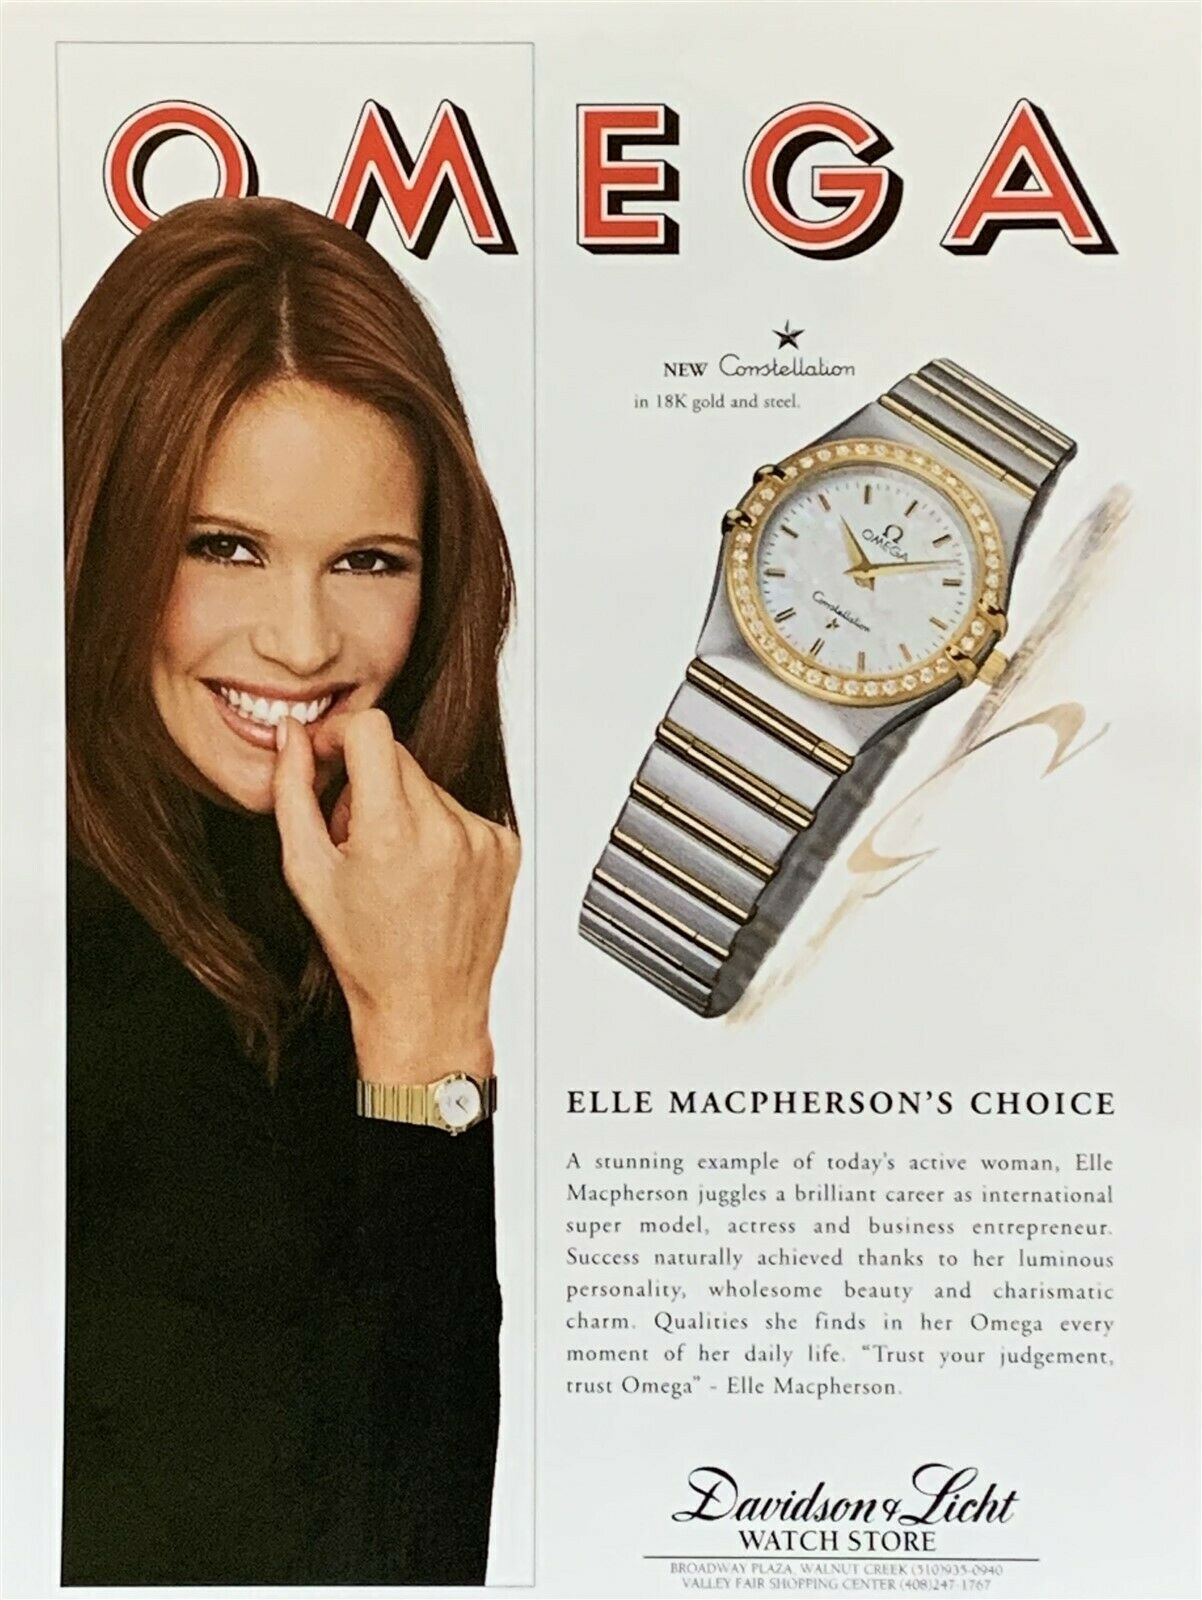 Ngoại lệ trong giới: Omega thường xuyên gắn hình ảnh nữ giới với đồng hồ của hãng